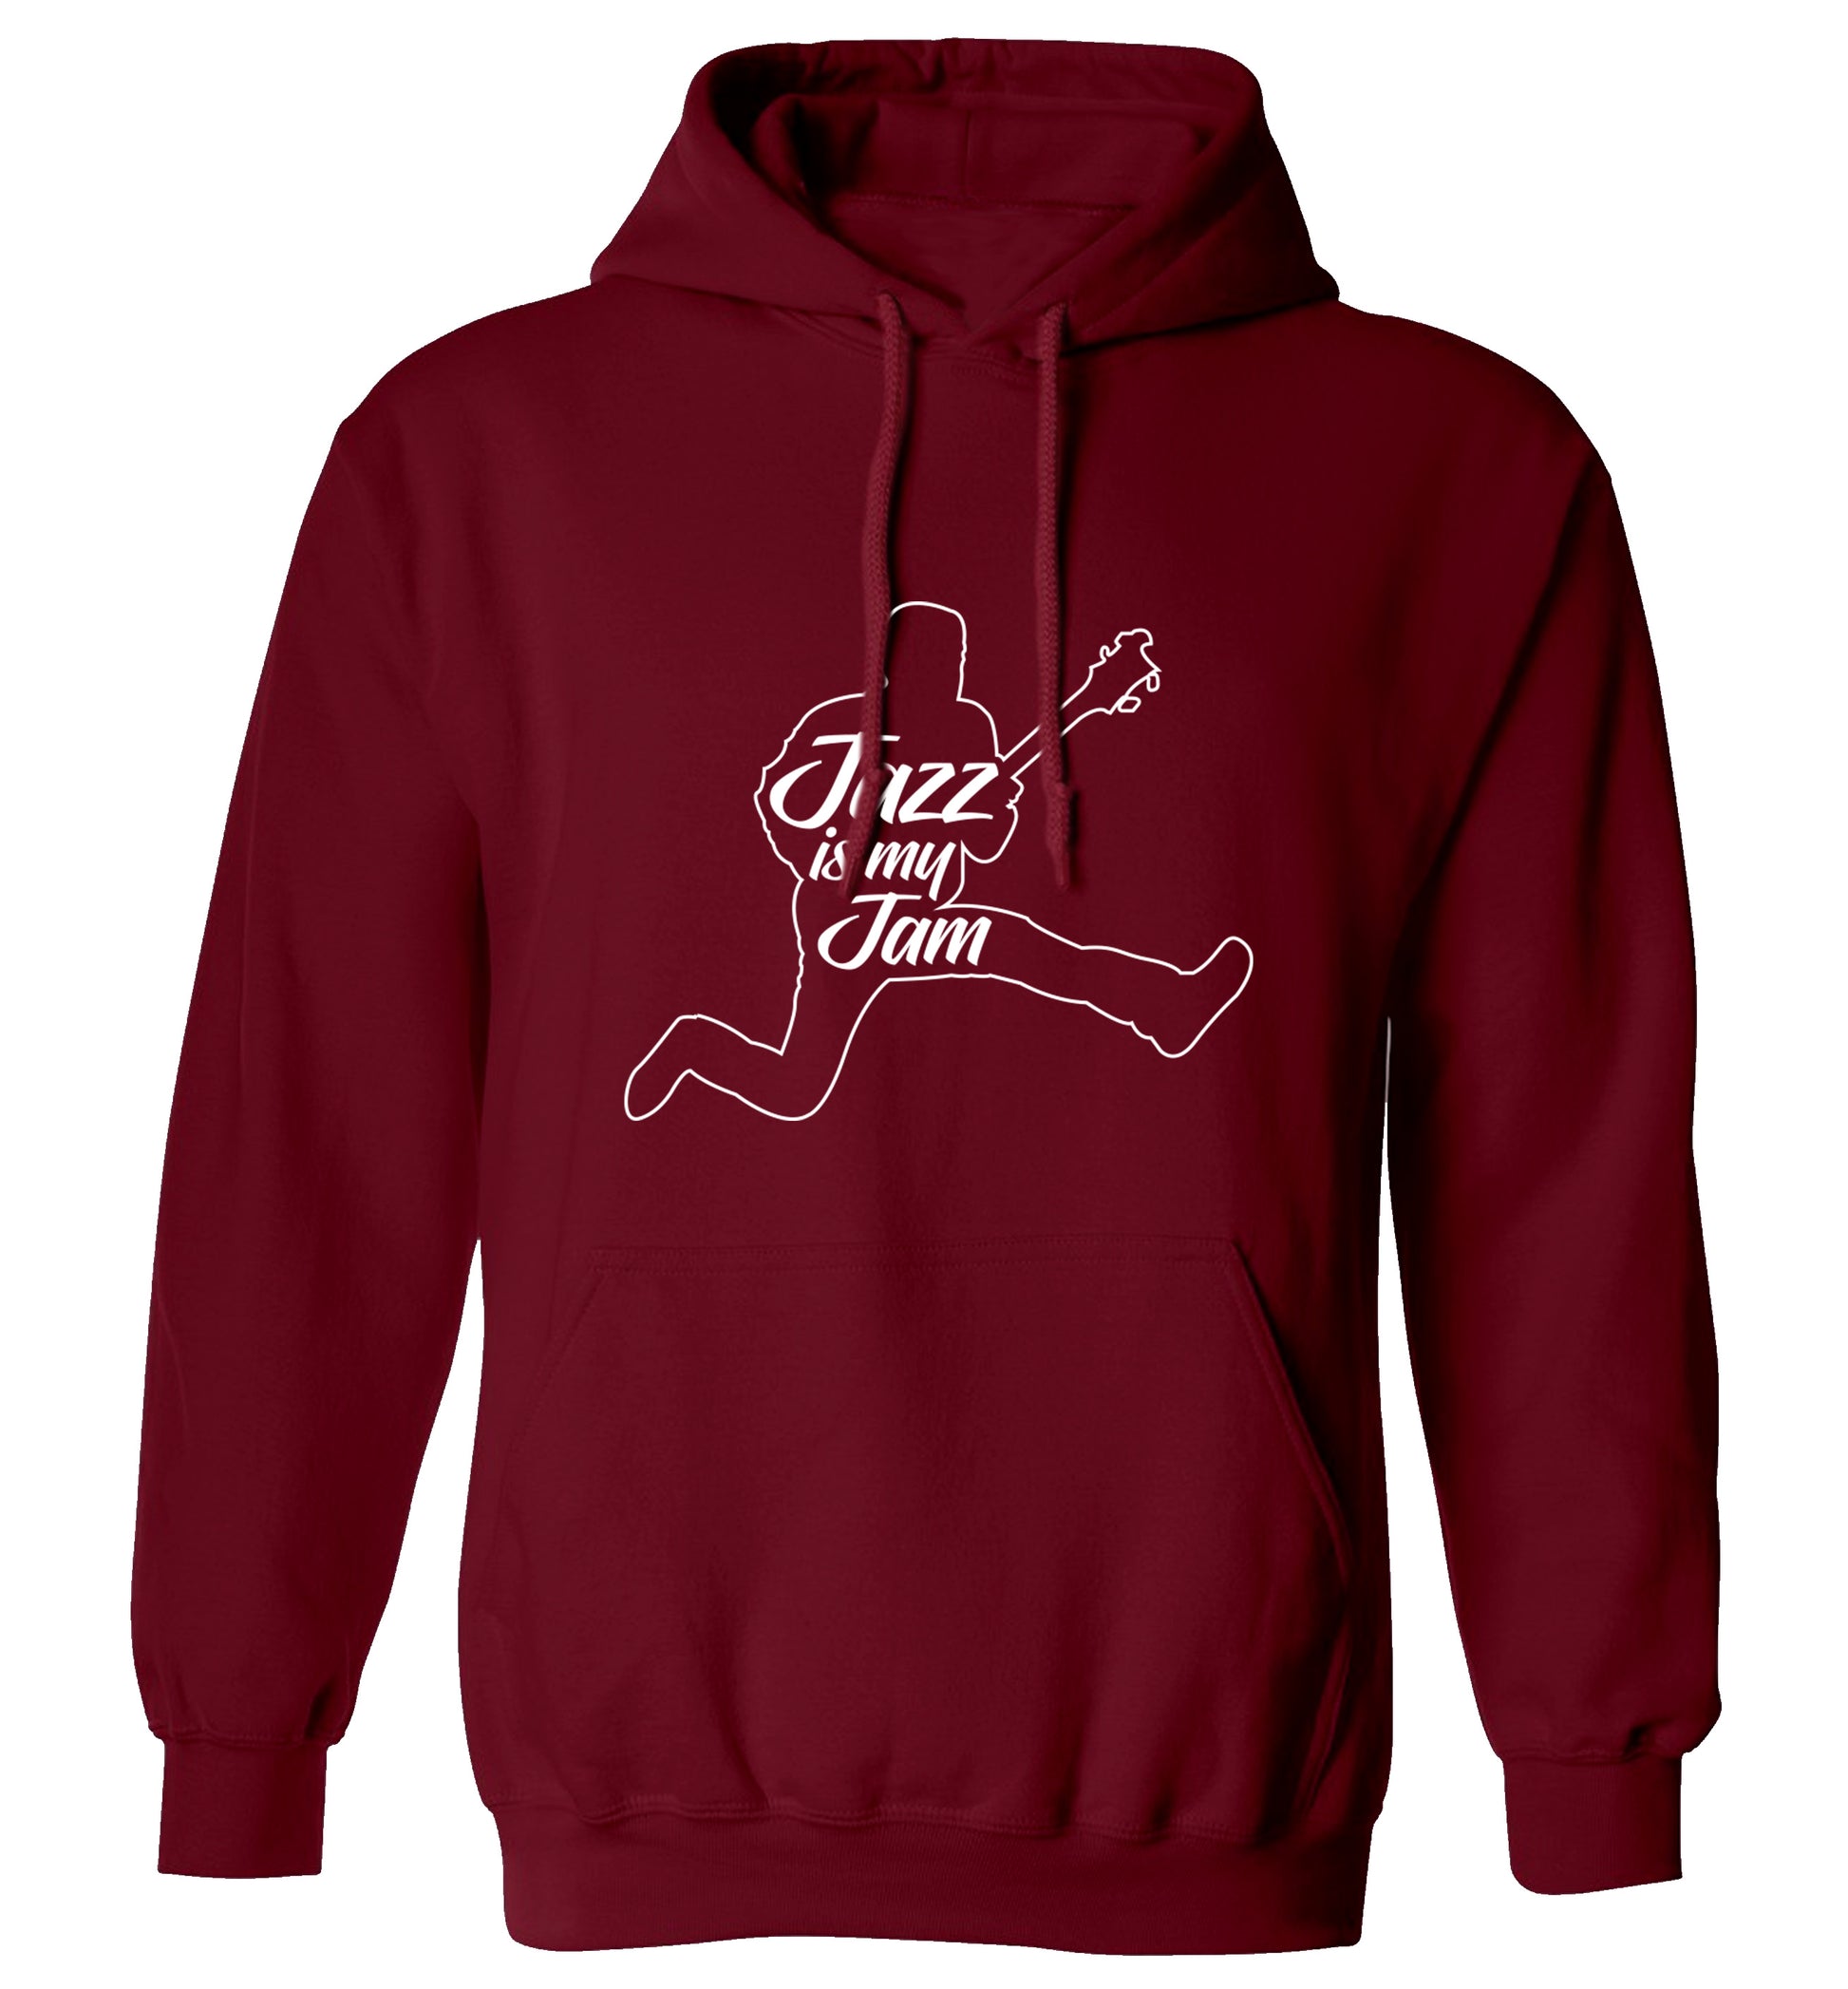 Jazz is my jam adults unisex maroon hoodie 2XL